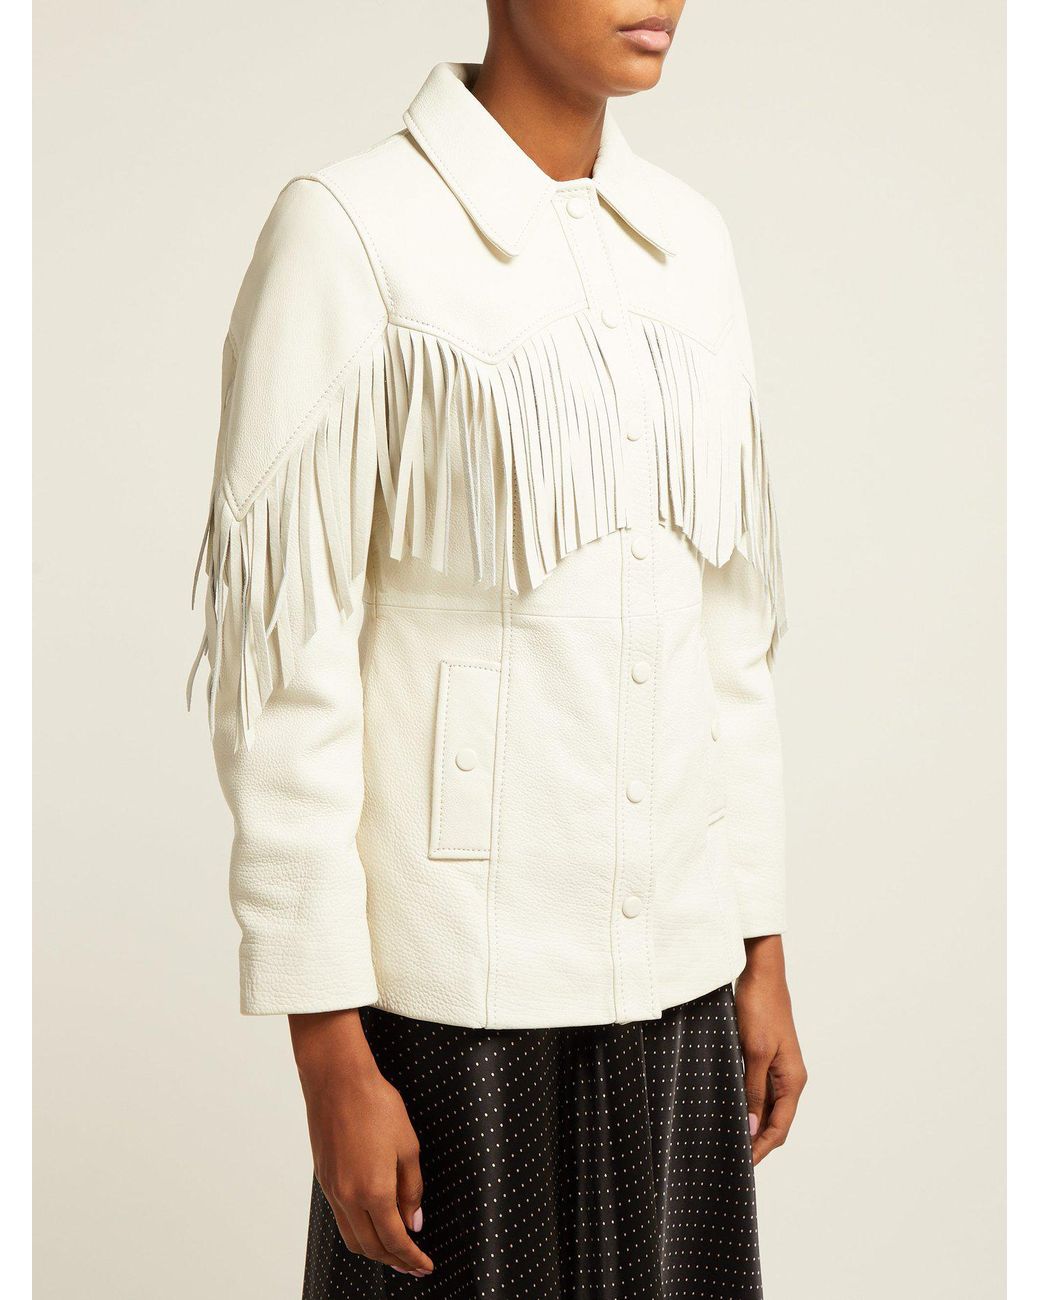 Ganni Angela Fringed Leather Jacket in White | Lyst